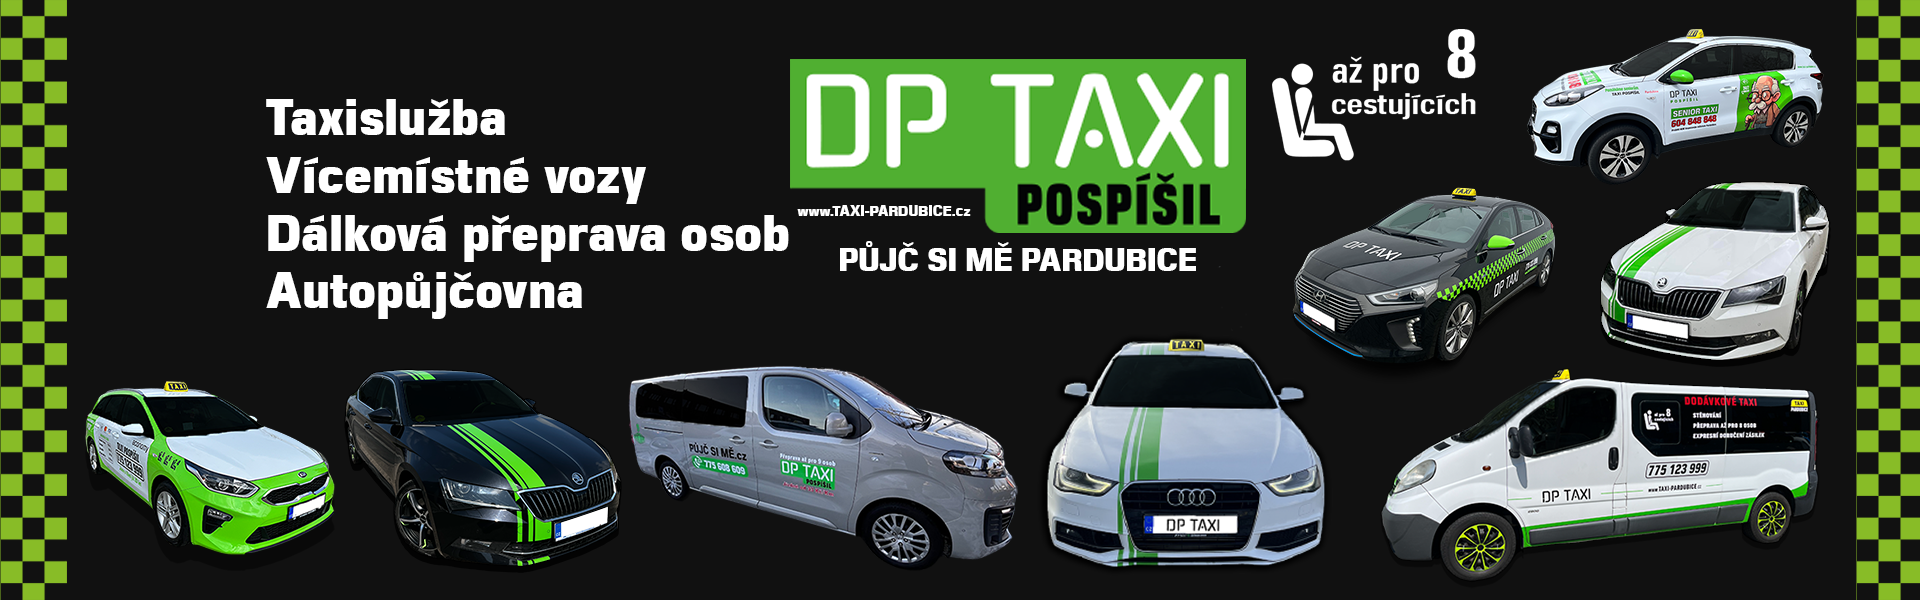 DP Taxi